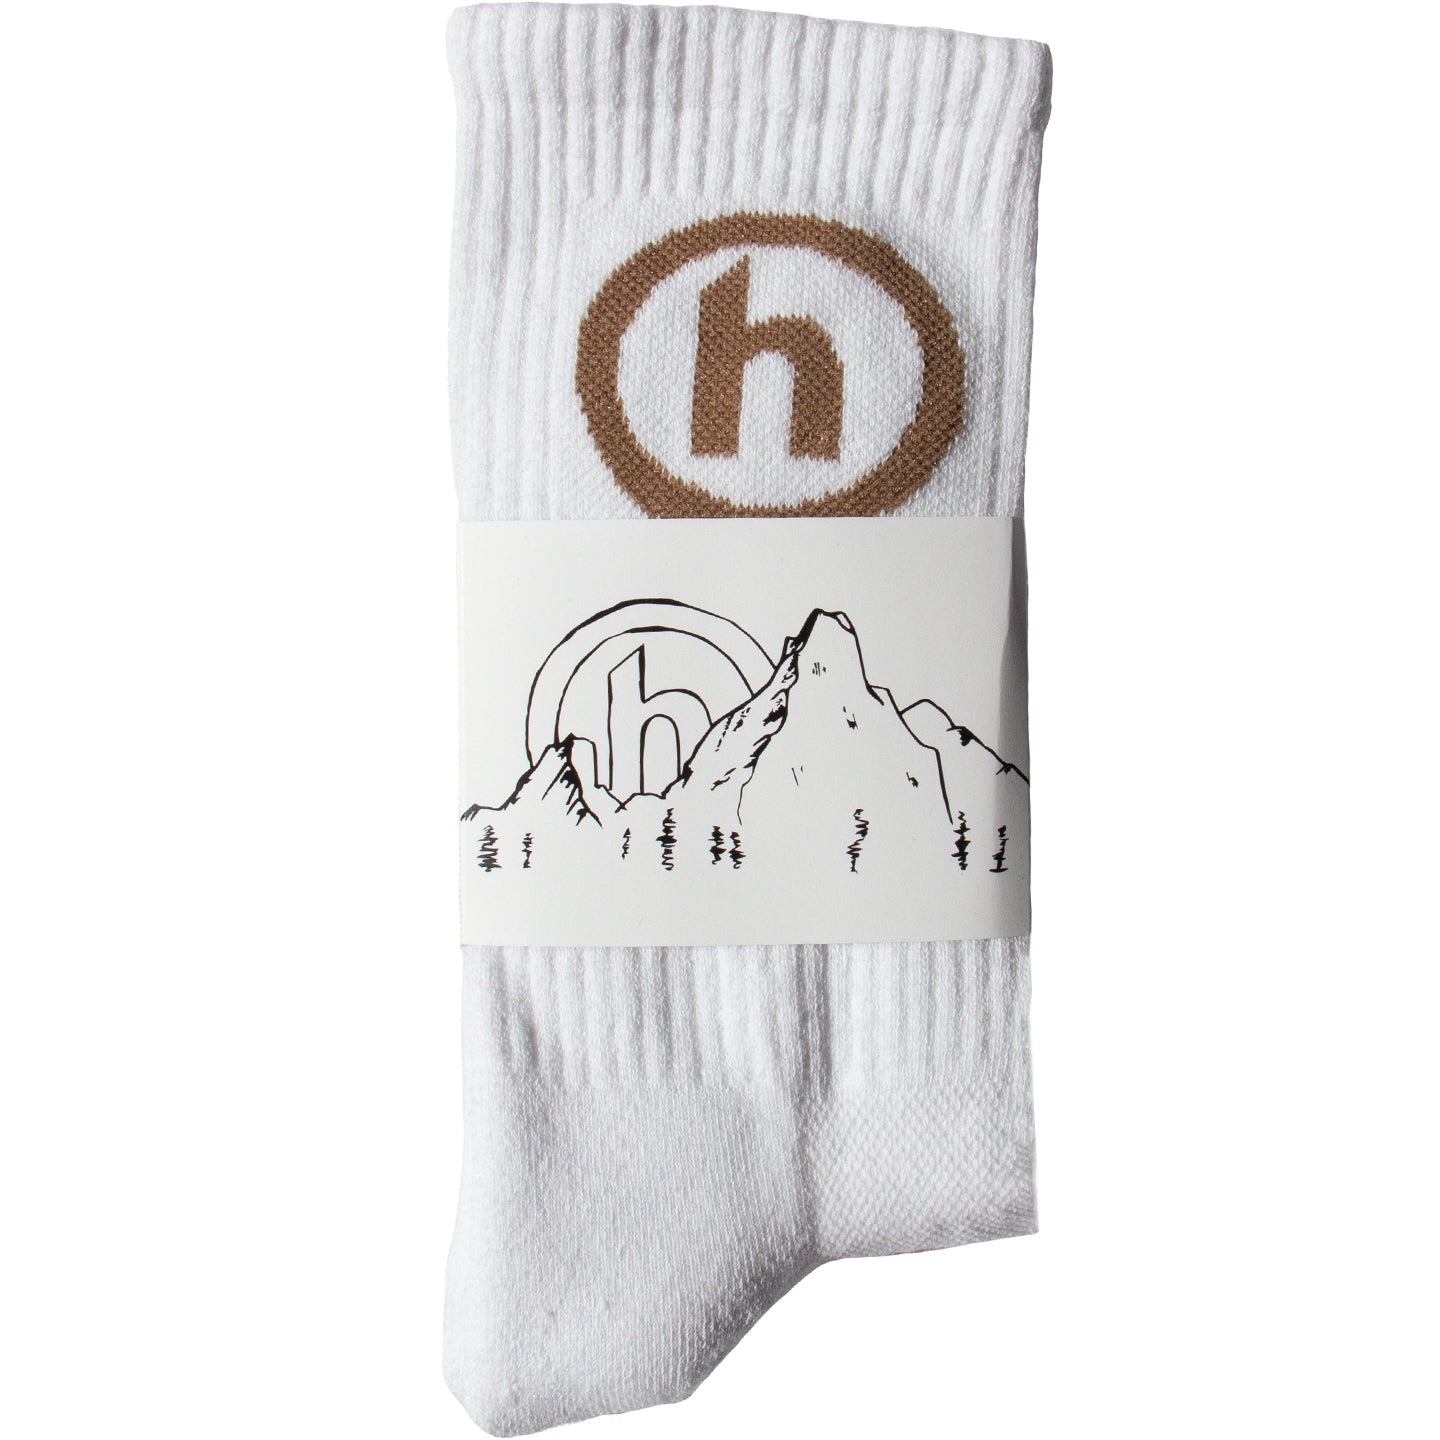 HIDDEN NY hidden ny Socks socks W/Br - ソックス